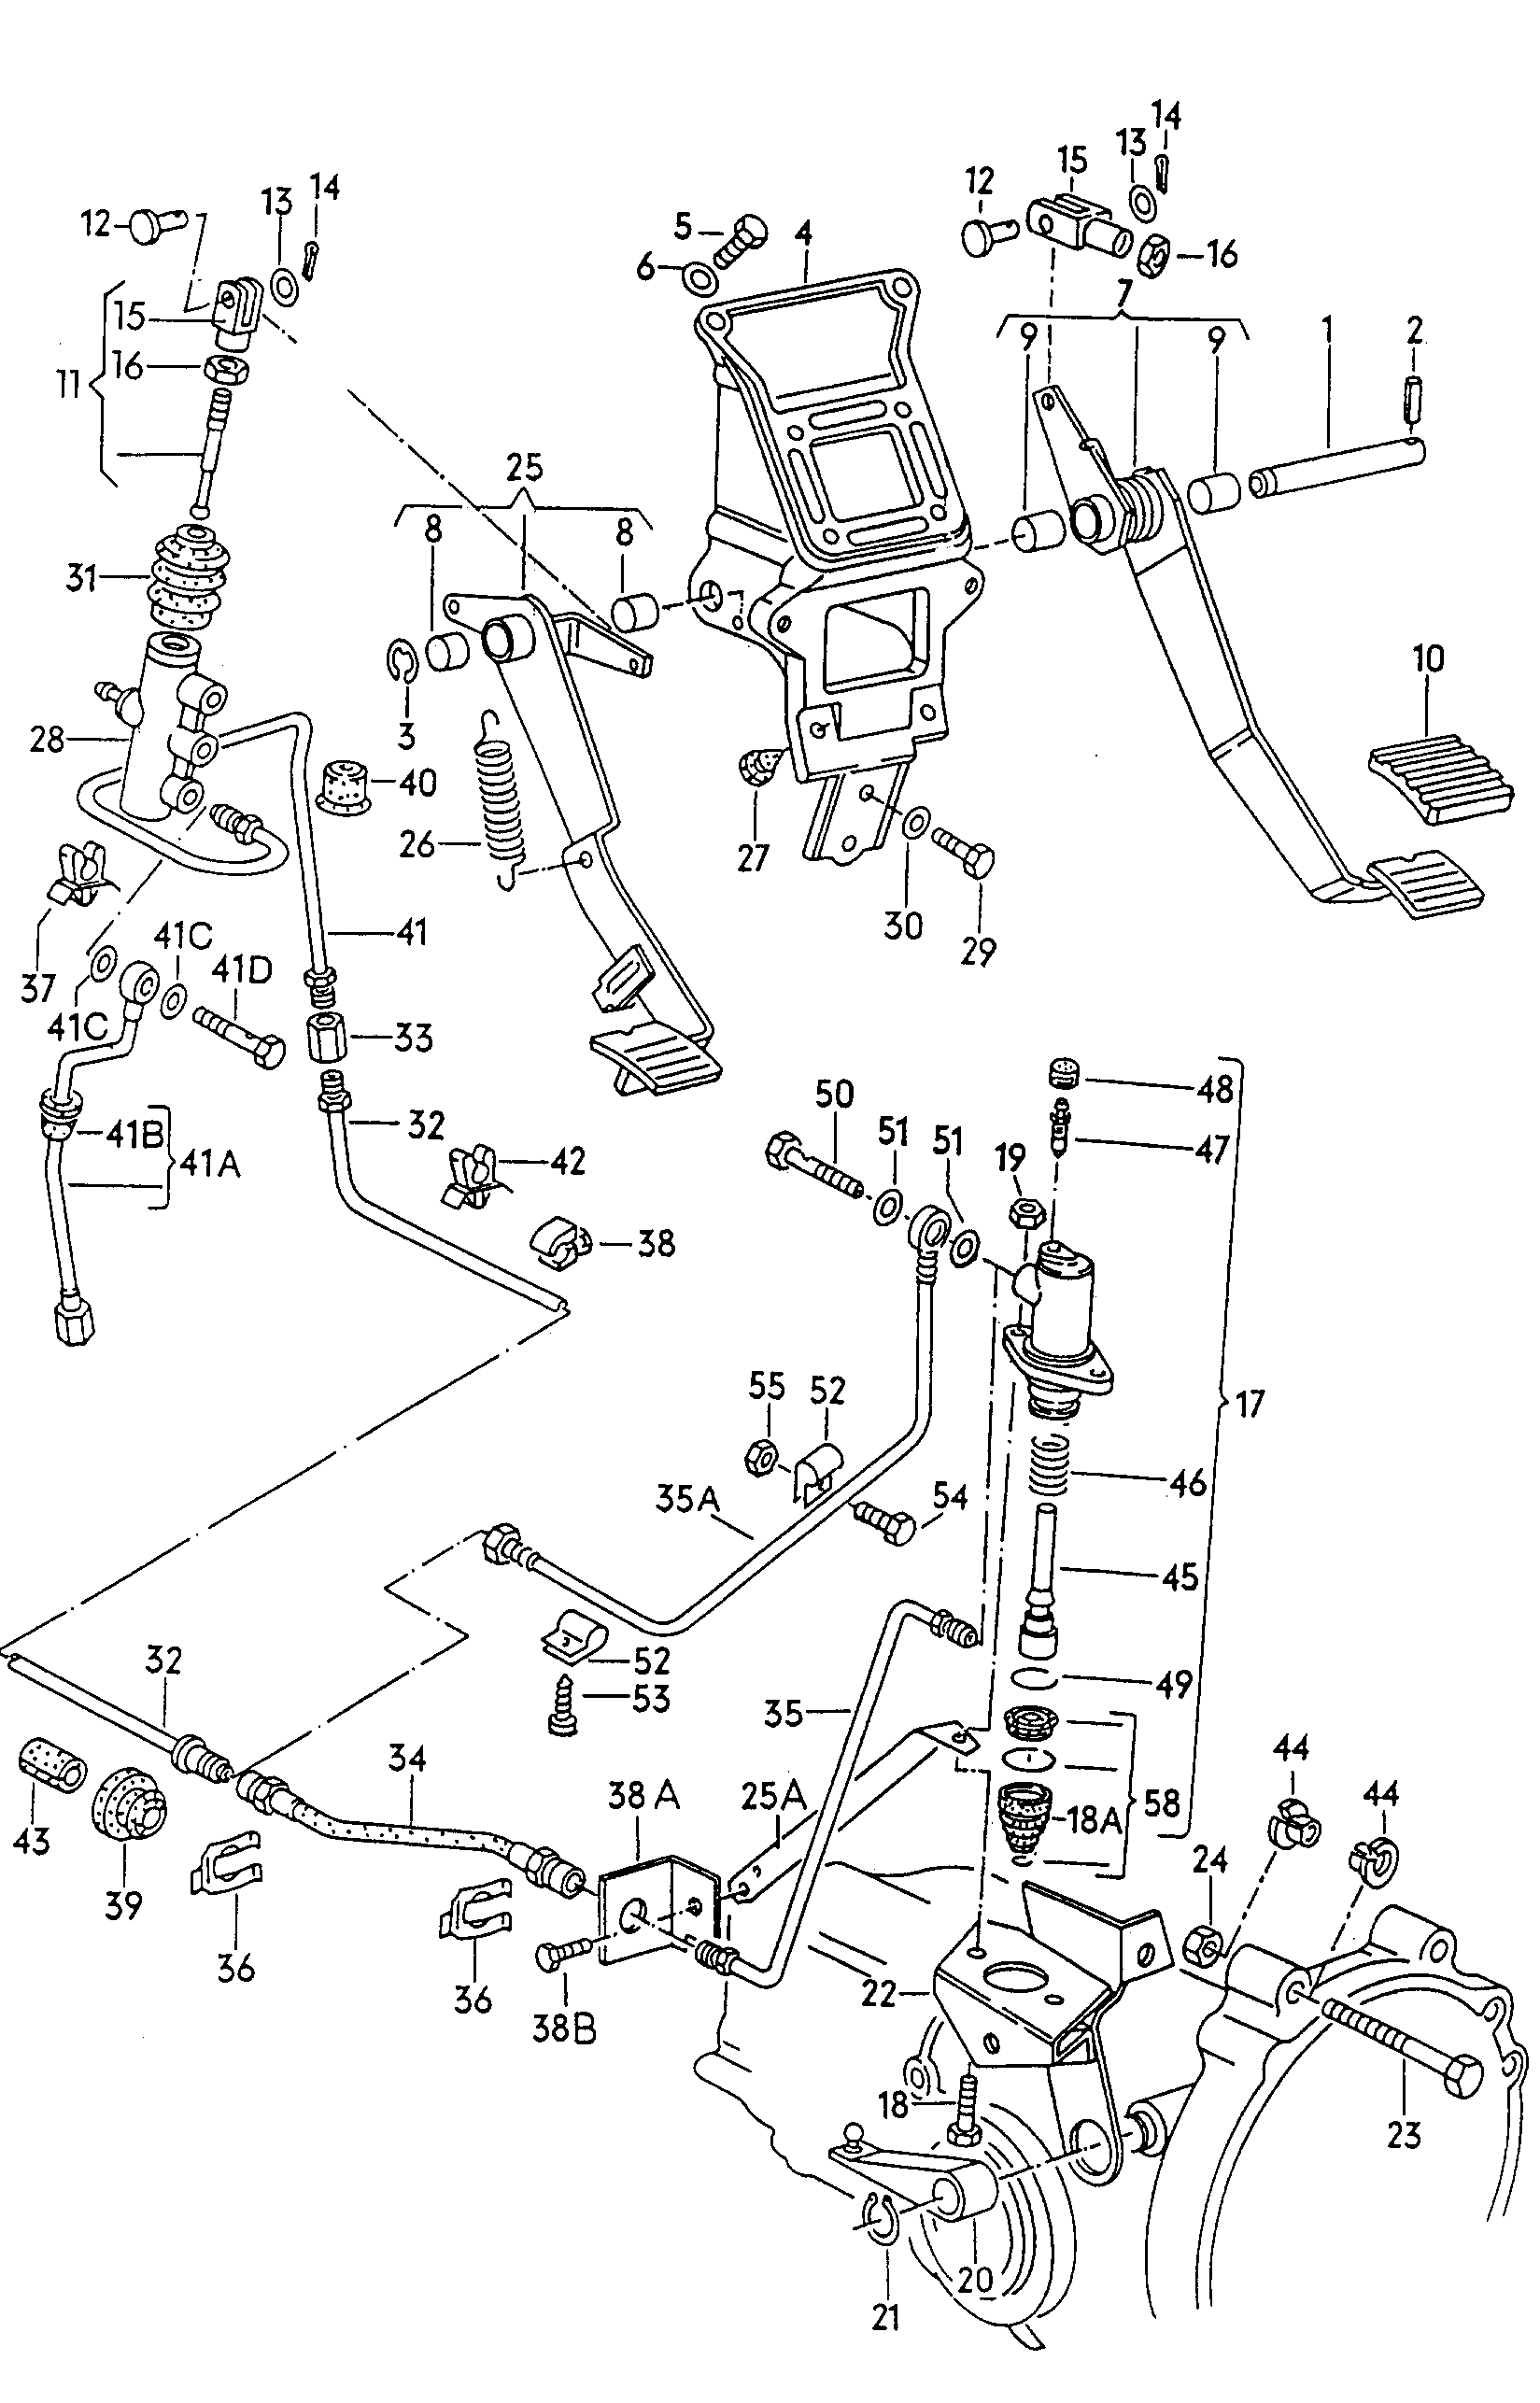 Педальный узел тормоза<br>и сцеплениядля гидравлического привода<br>сцепления  - Typ 2/syncro - t2